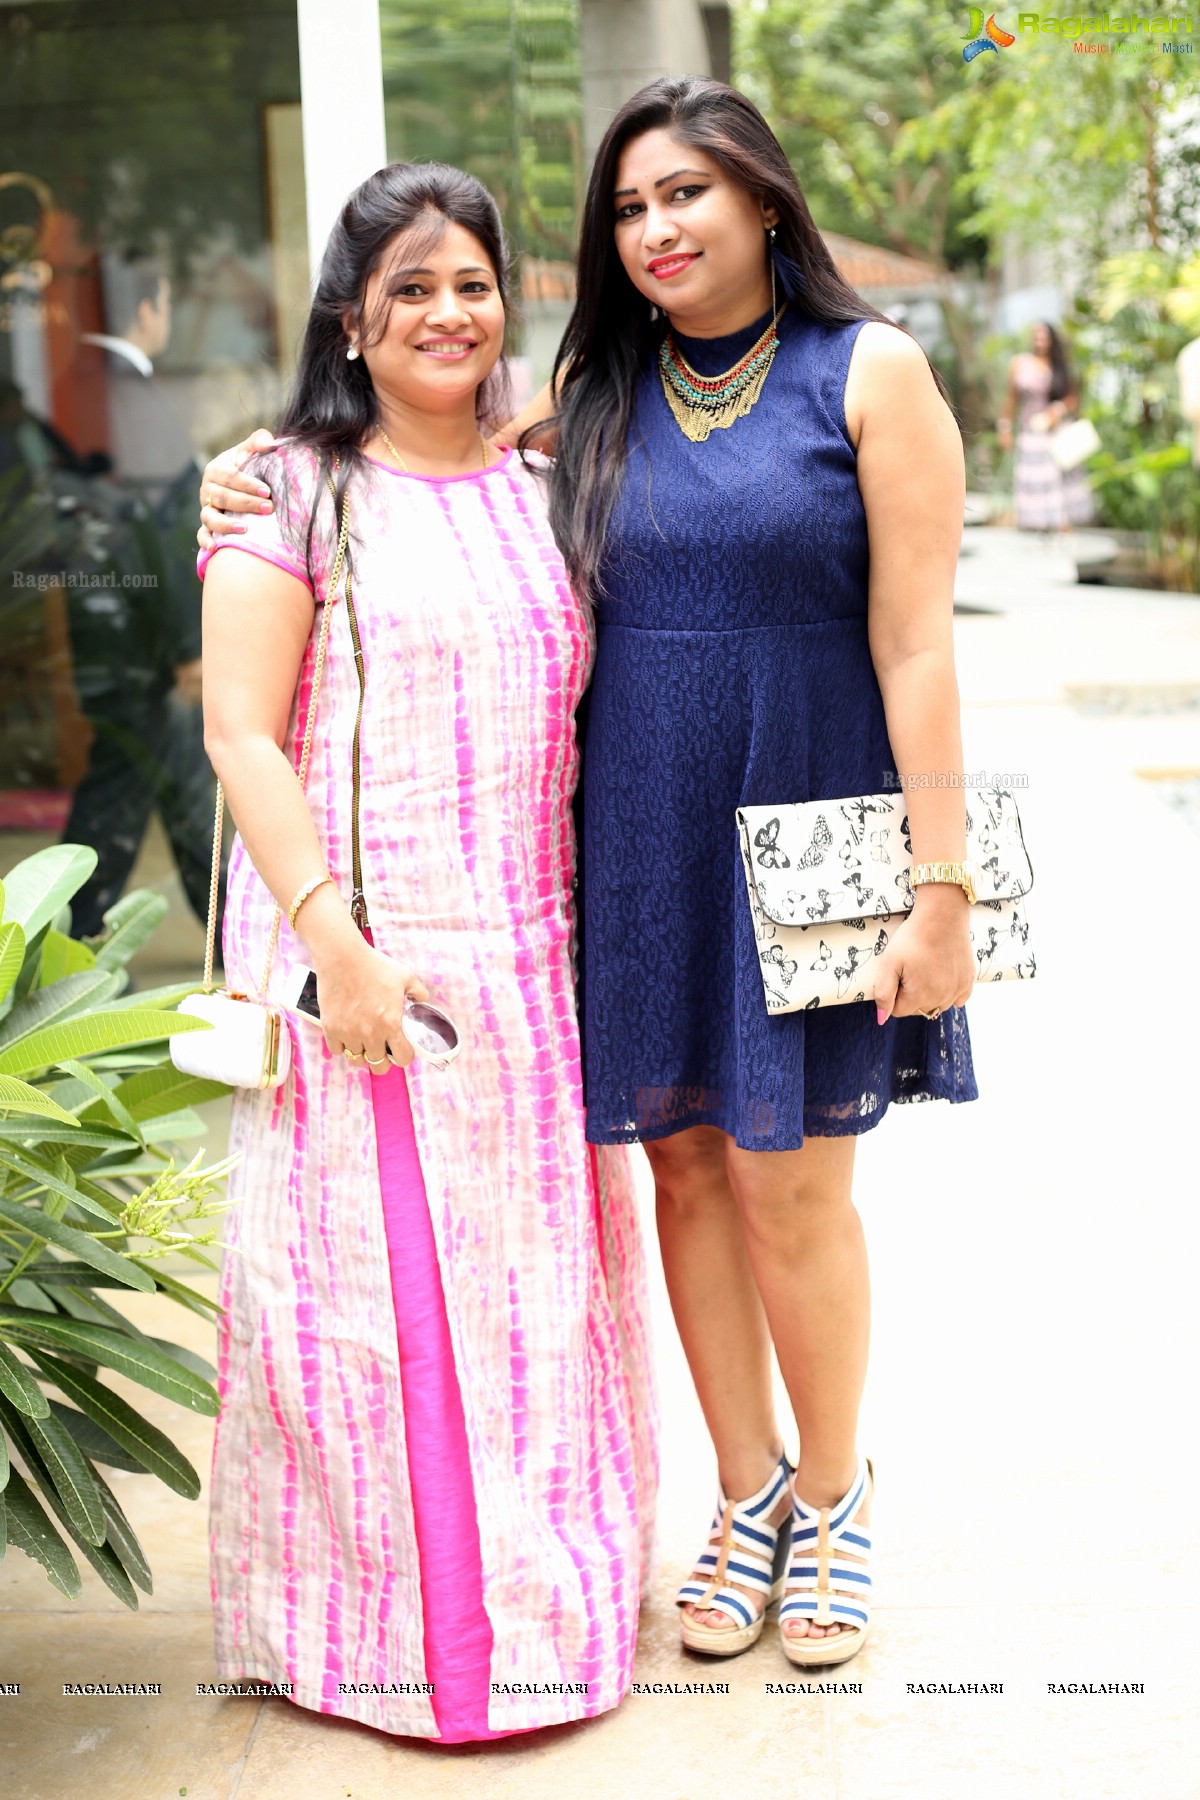 Divinos Ladies Club Big Spa Day at O2 Spa, Hyderabad